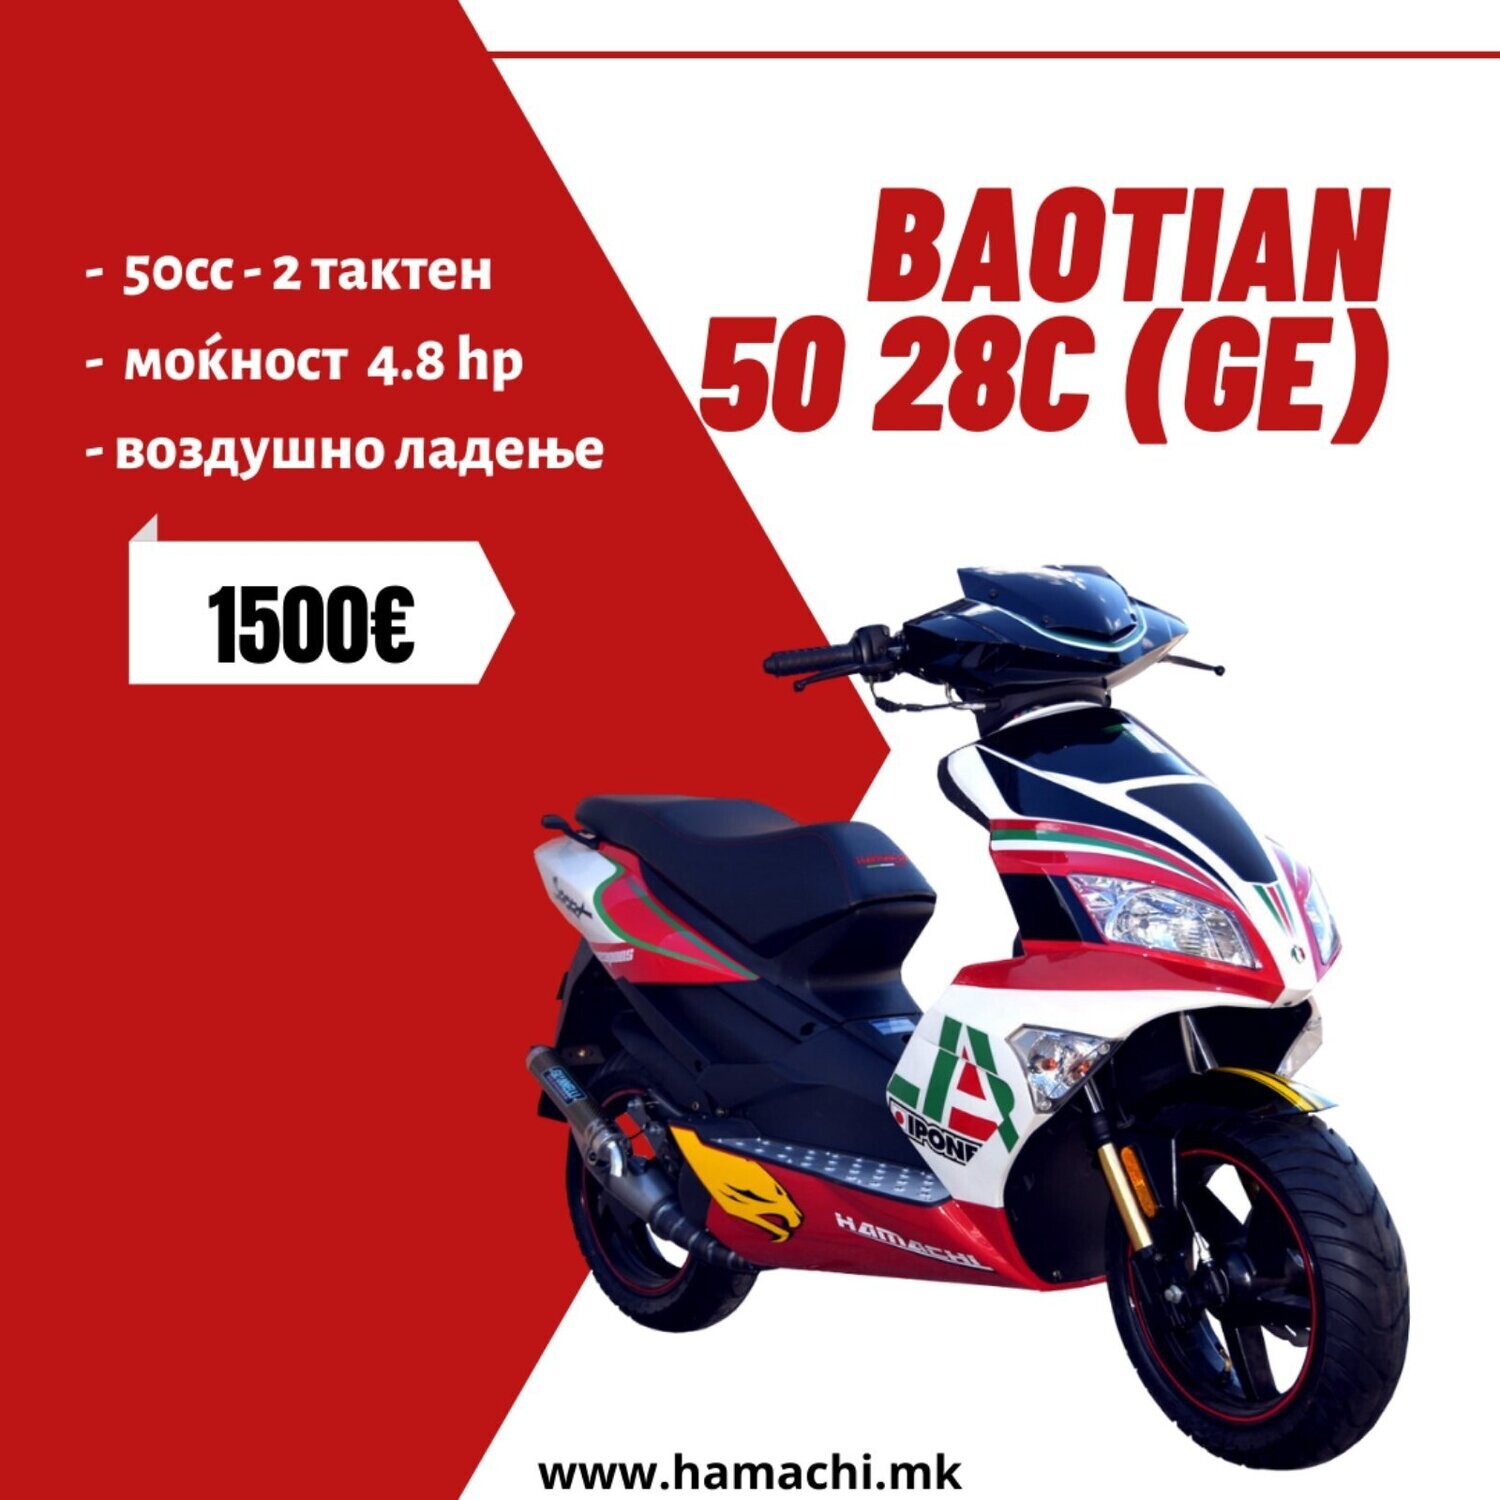 BAOTIAN 50 28C (GE)